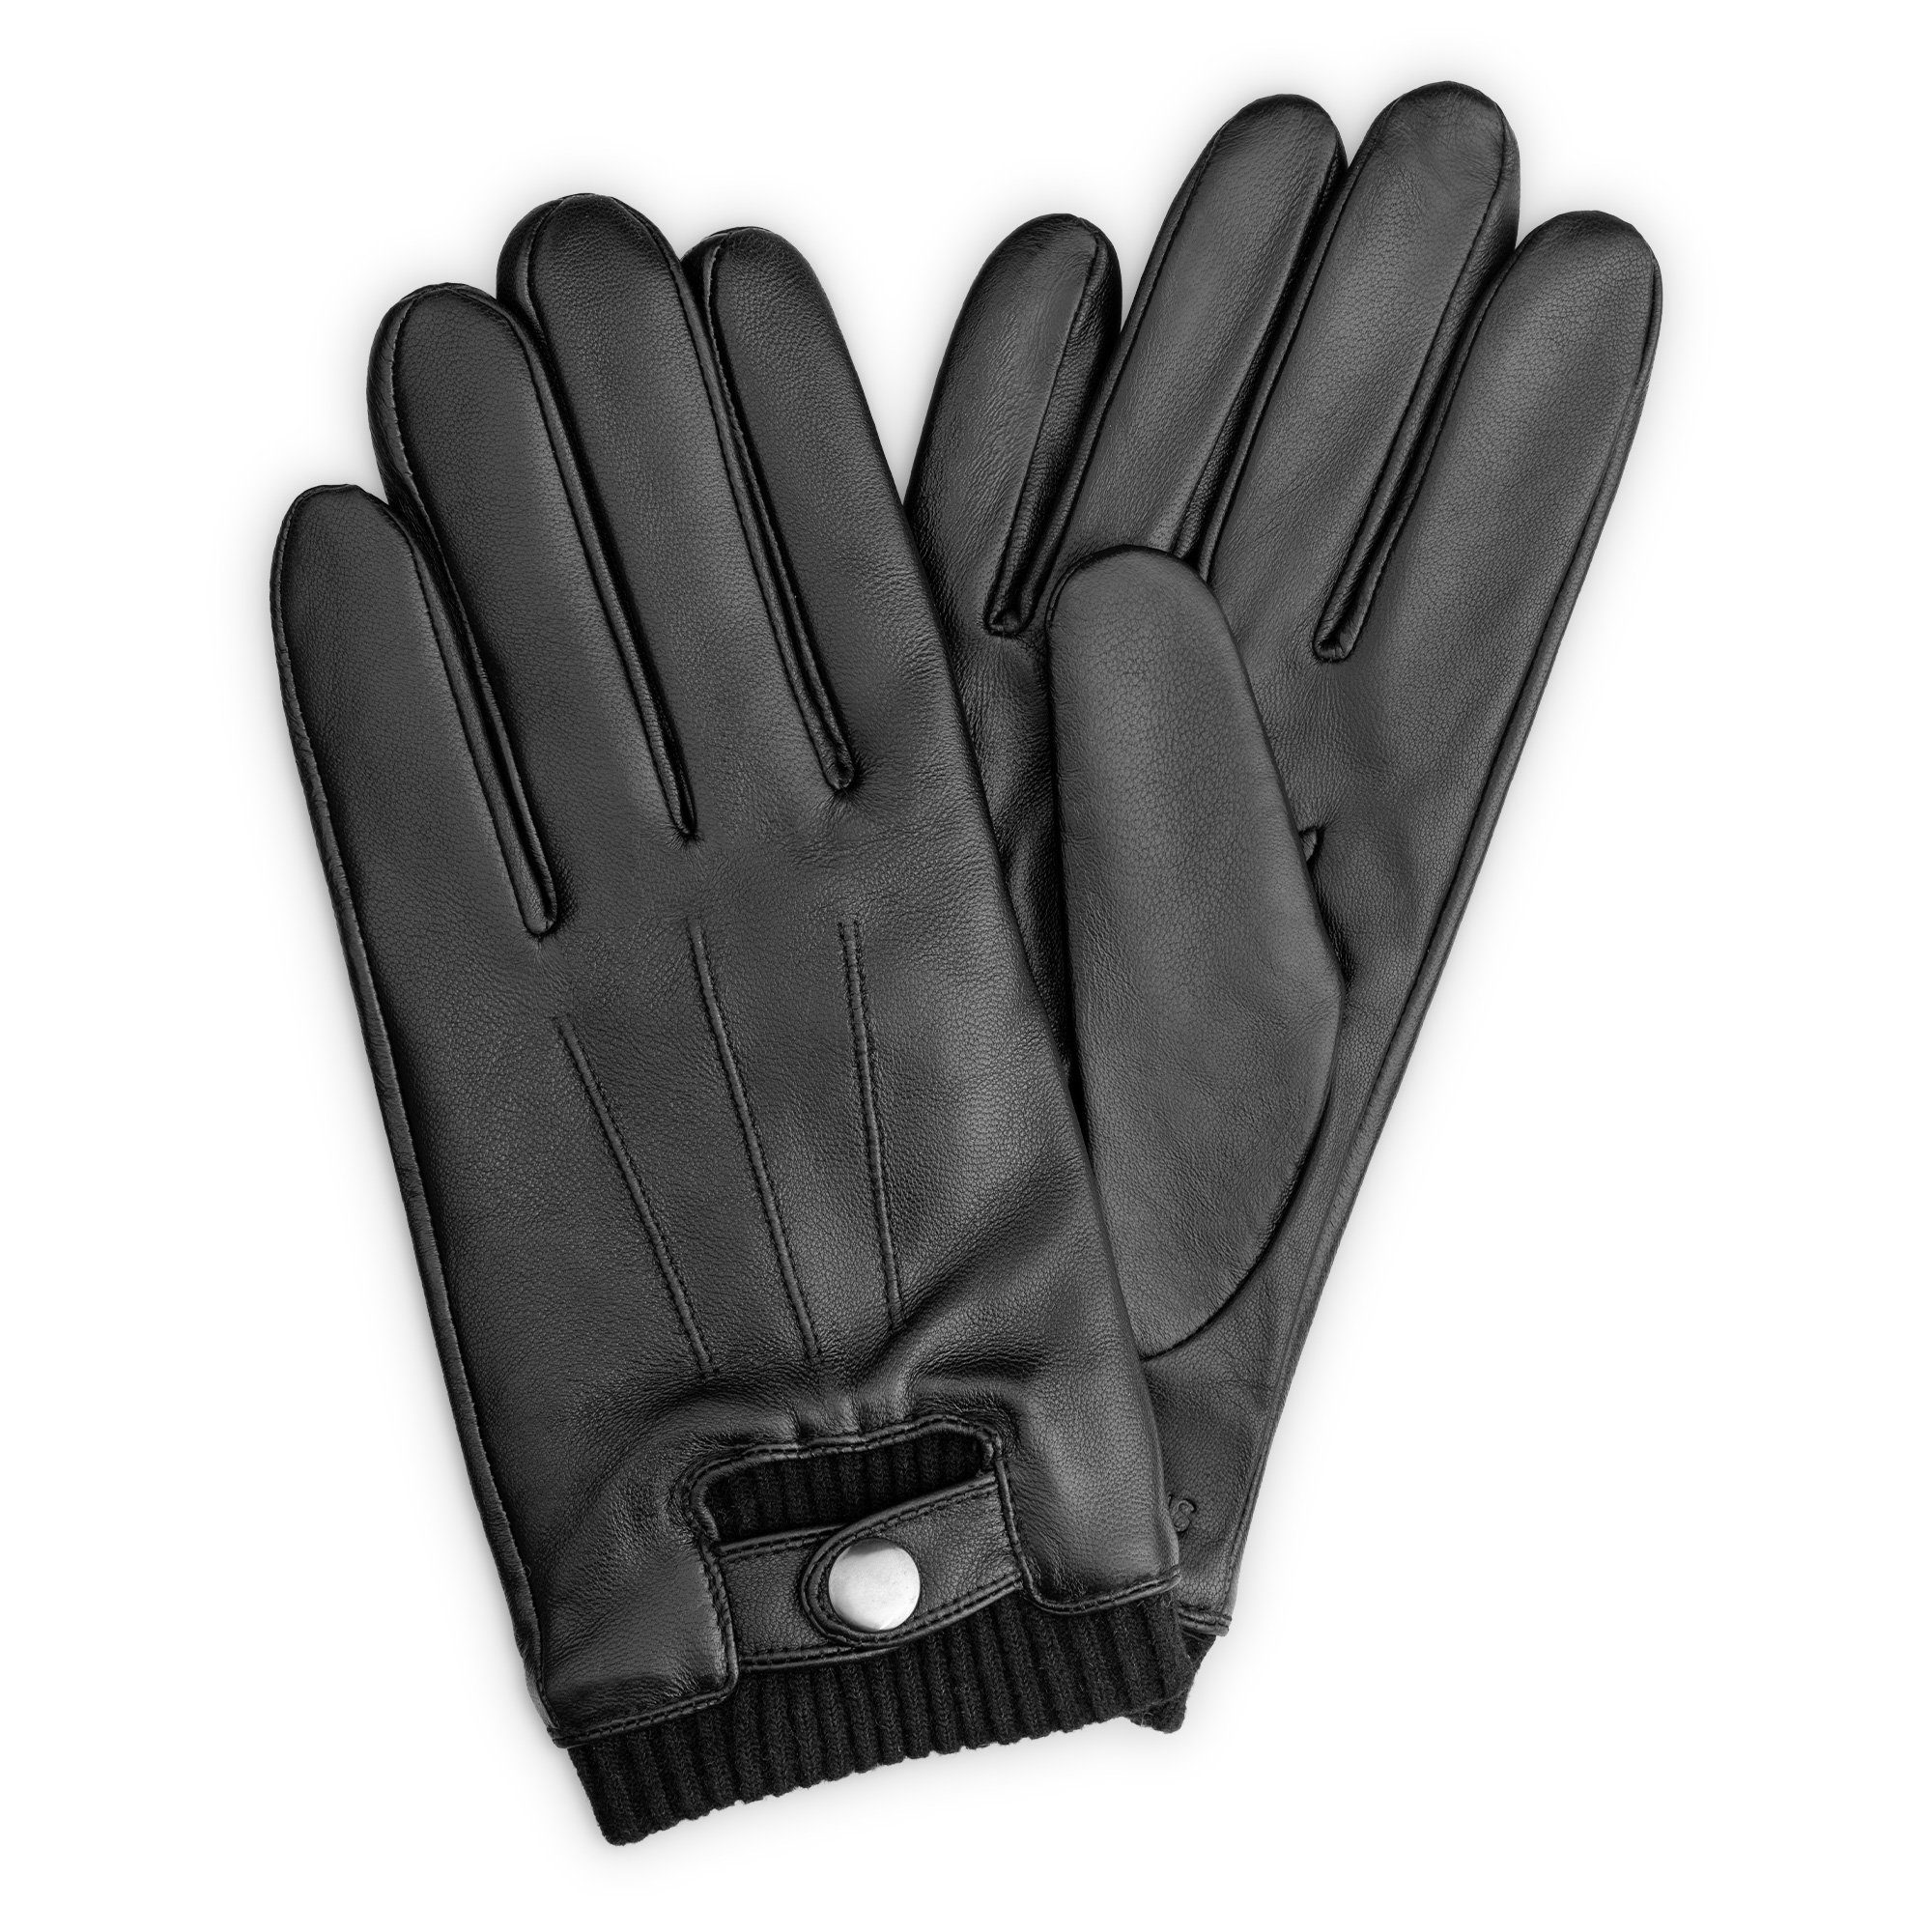 Navaris Lederhandschuhe Touchscreen Leder Handschuhe Herren - Nappa Lammleder - Wolle - M